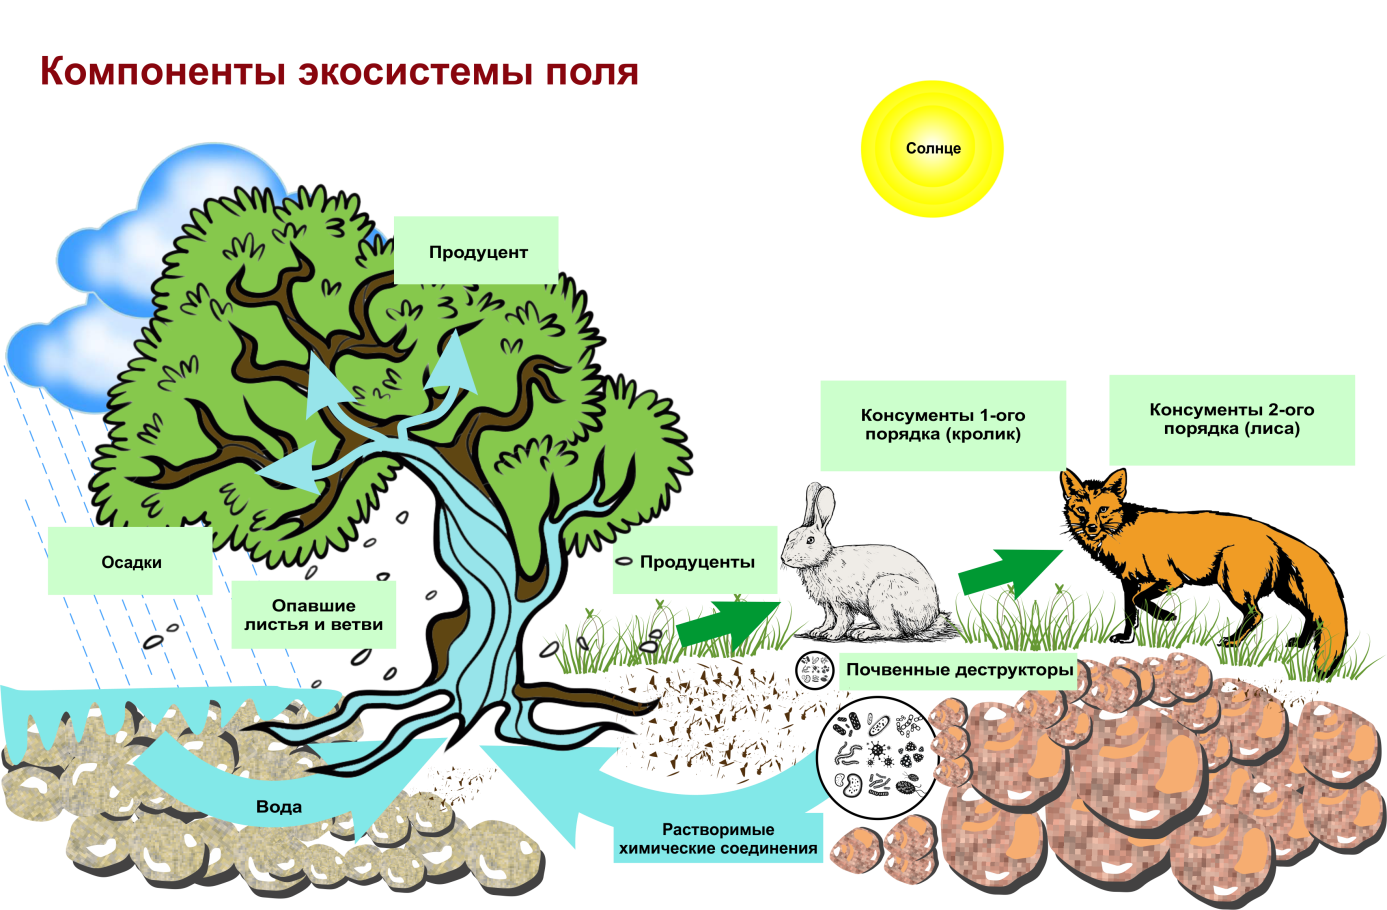 Роль организмов в биогеоценозе. Структура биогеоценоза и экосистемы. Схема трофической структуры биоценоза широколиственного леса. Строение биогеоценоза экосистемы. Схема состава компонентов экосистемы.